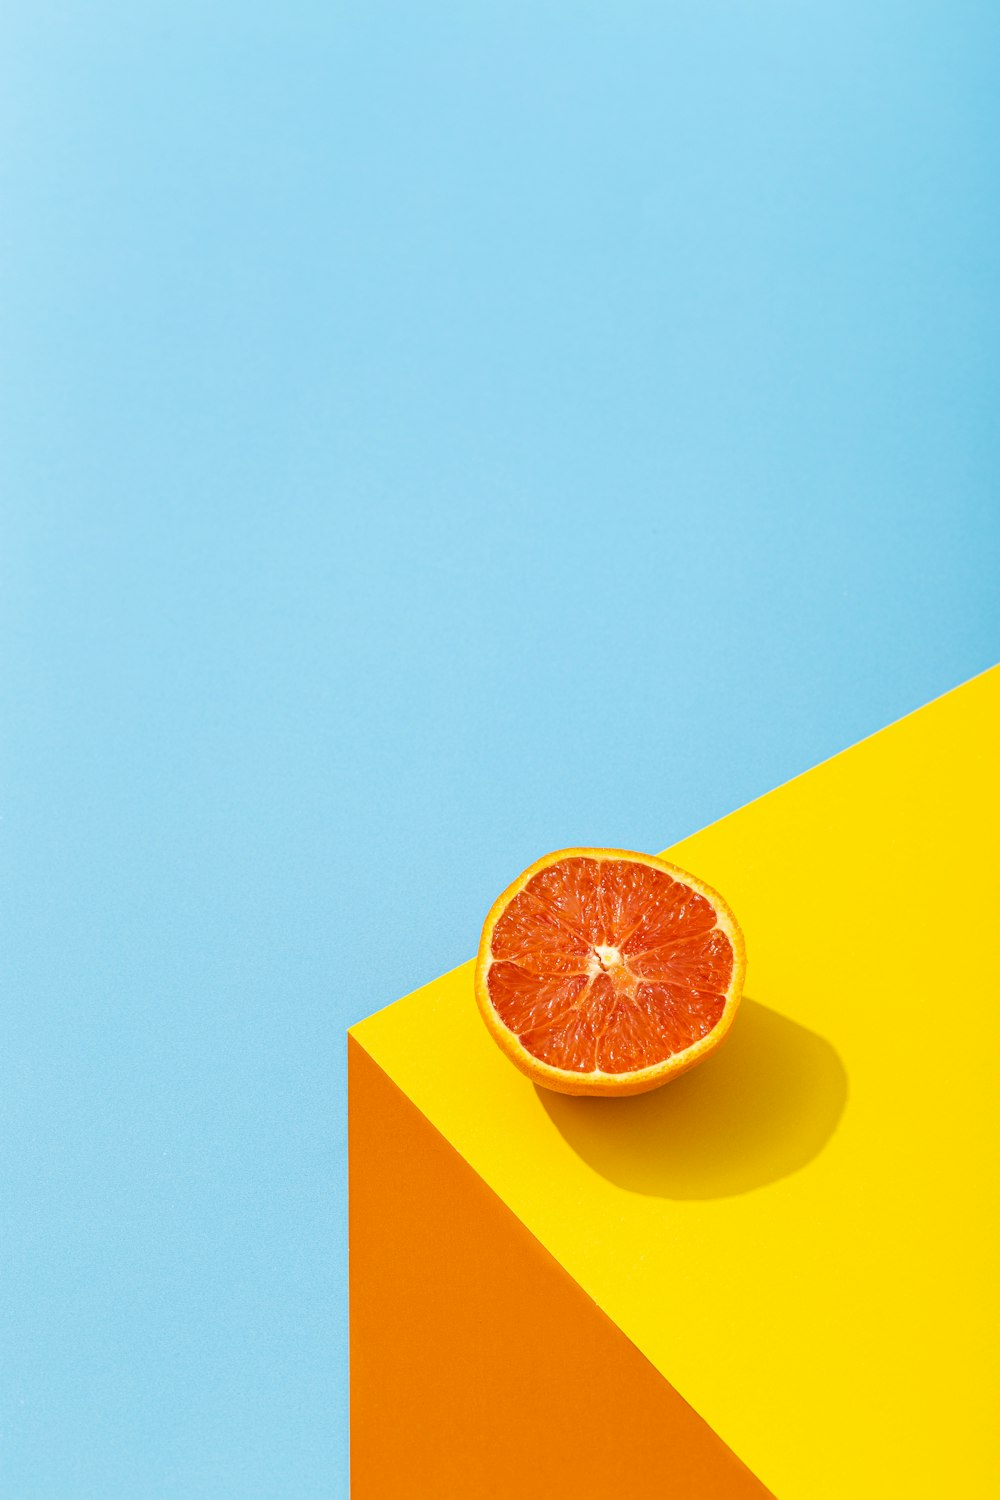 Hình nền màu cam miễn phí (Orange Wallpapers) - Bạn đang muốn tìm kiếm những hình nền màu cam đẹp mắt để làm mới màn hình của mình? Hãy tìm ngay tại ảnh liên quan đến từ khóa này. Chúng tôi cung cấp cho bạn những hình nền màu cam miễn phí, độc đáo và đẹp mắt nhất.